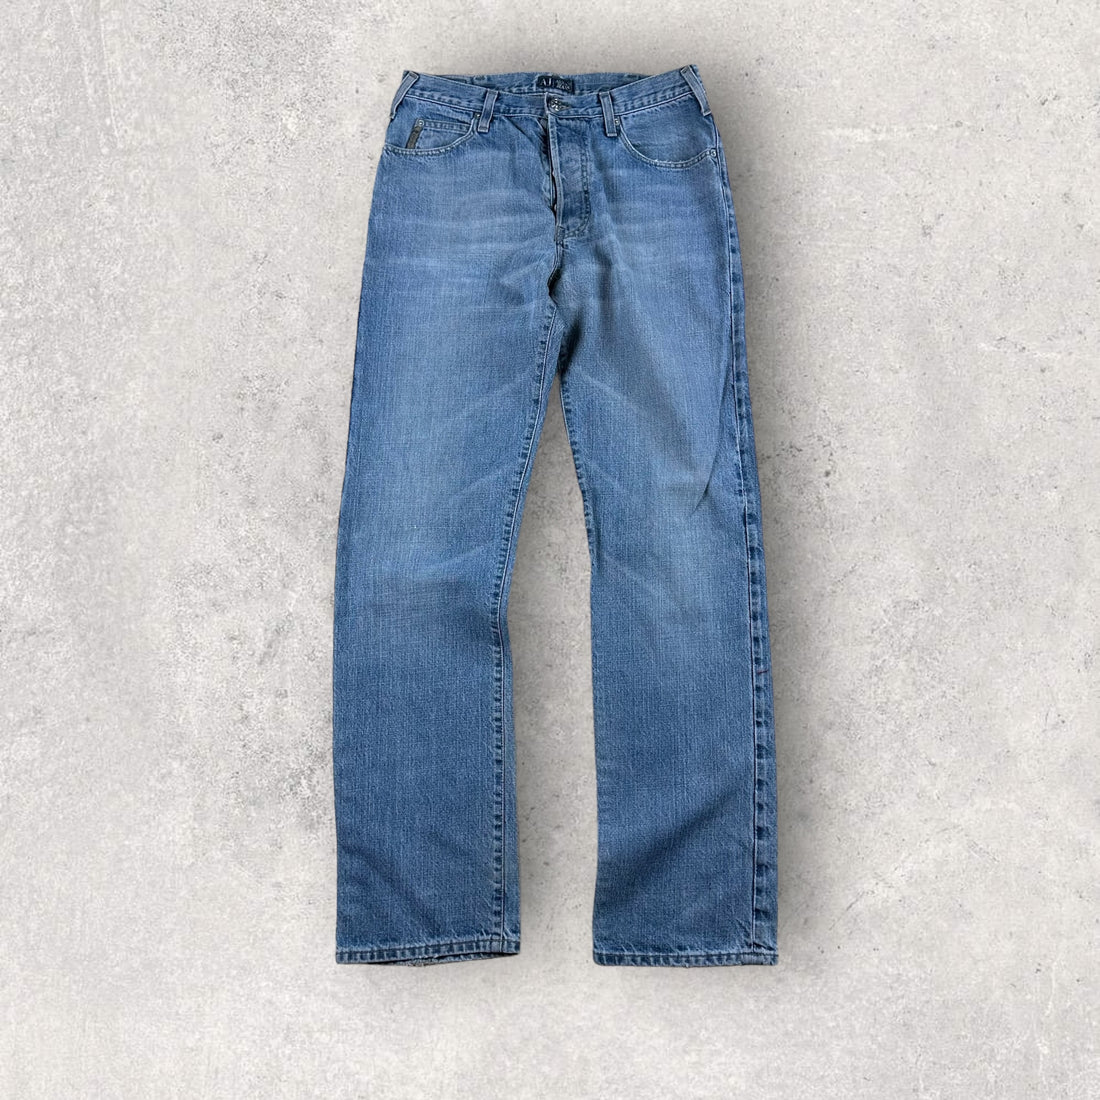 Vintage Armani Jeans (32)